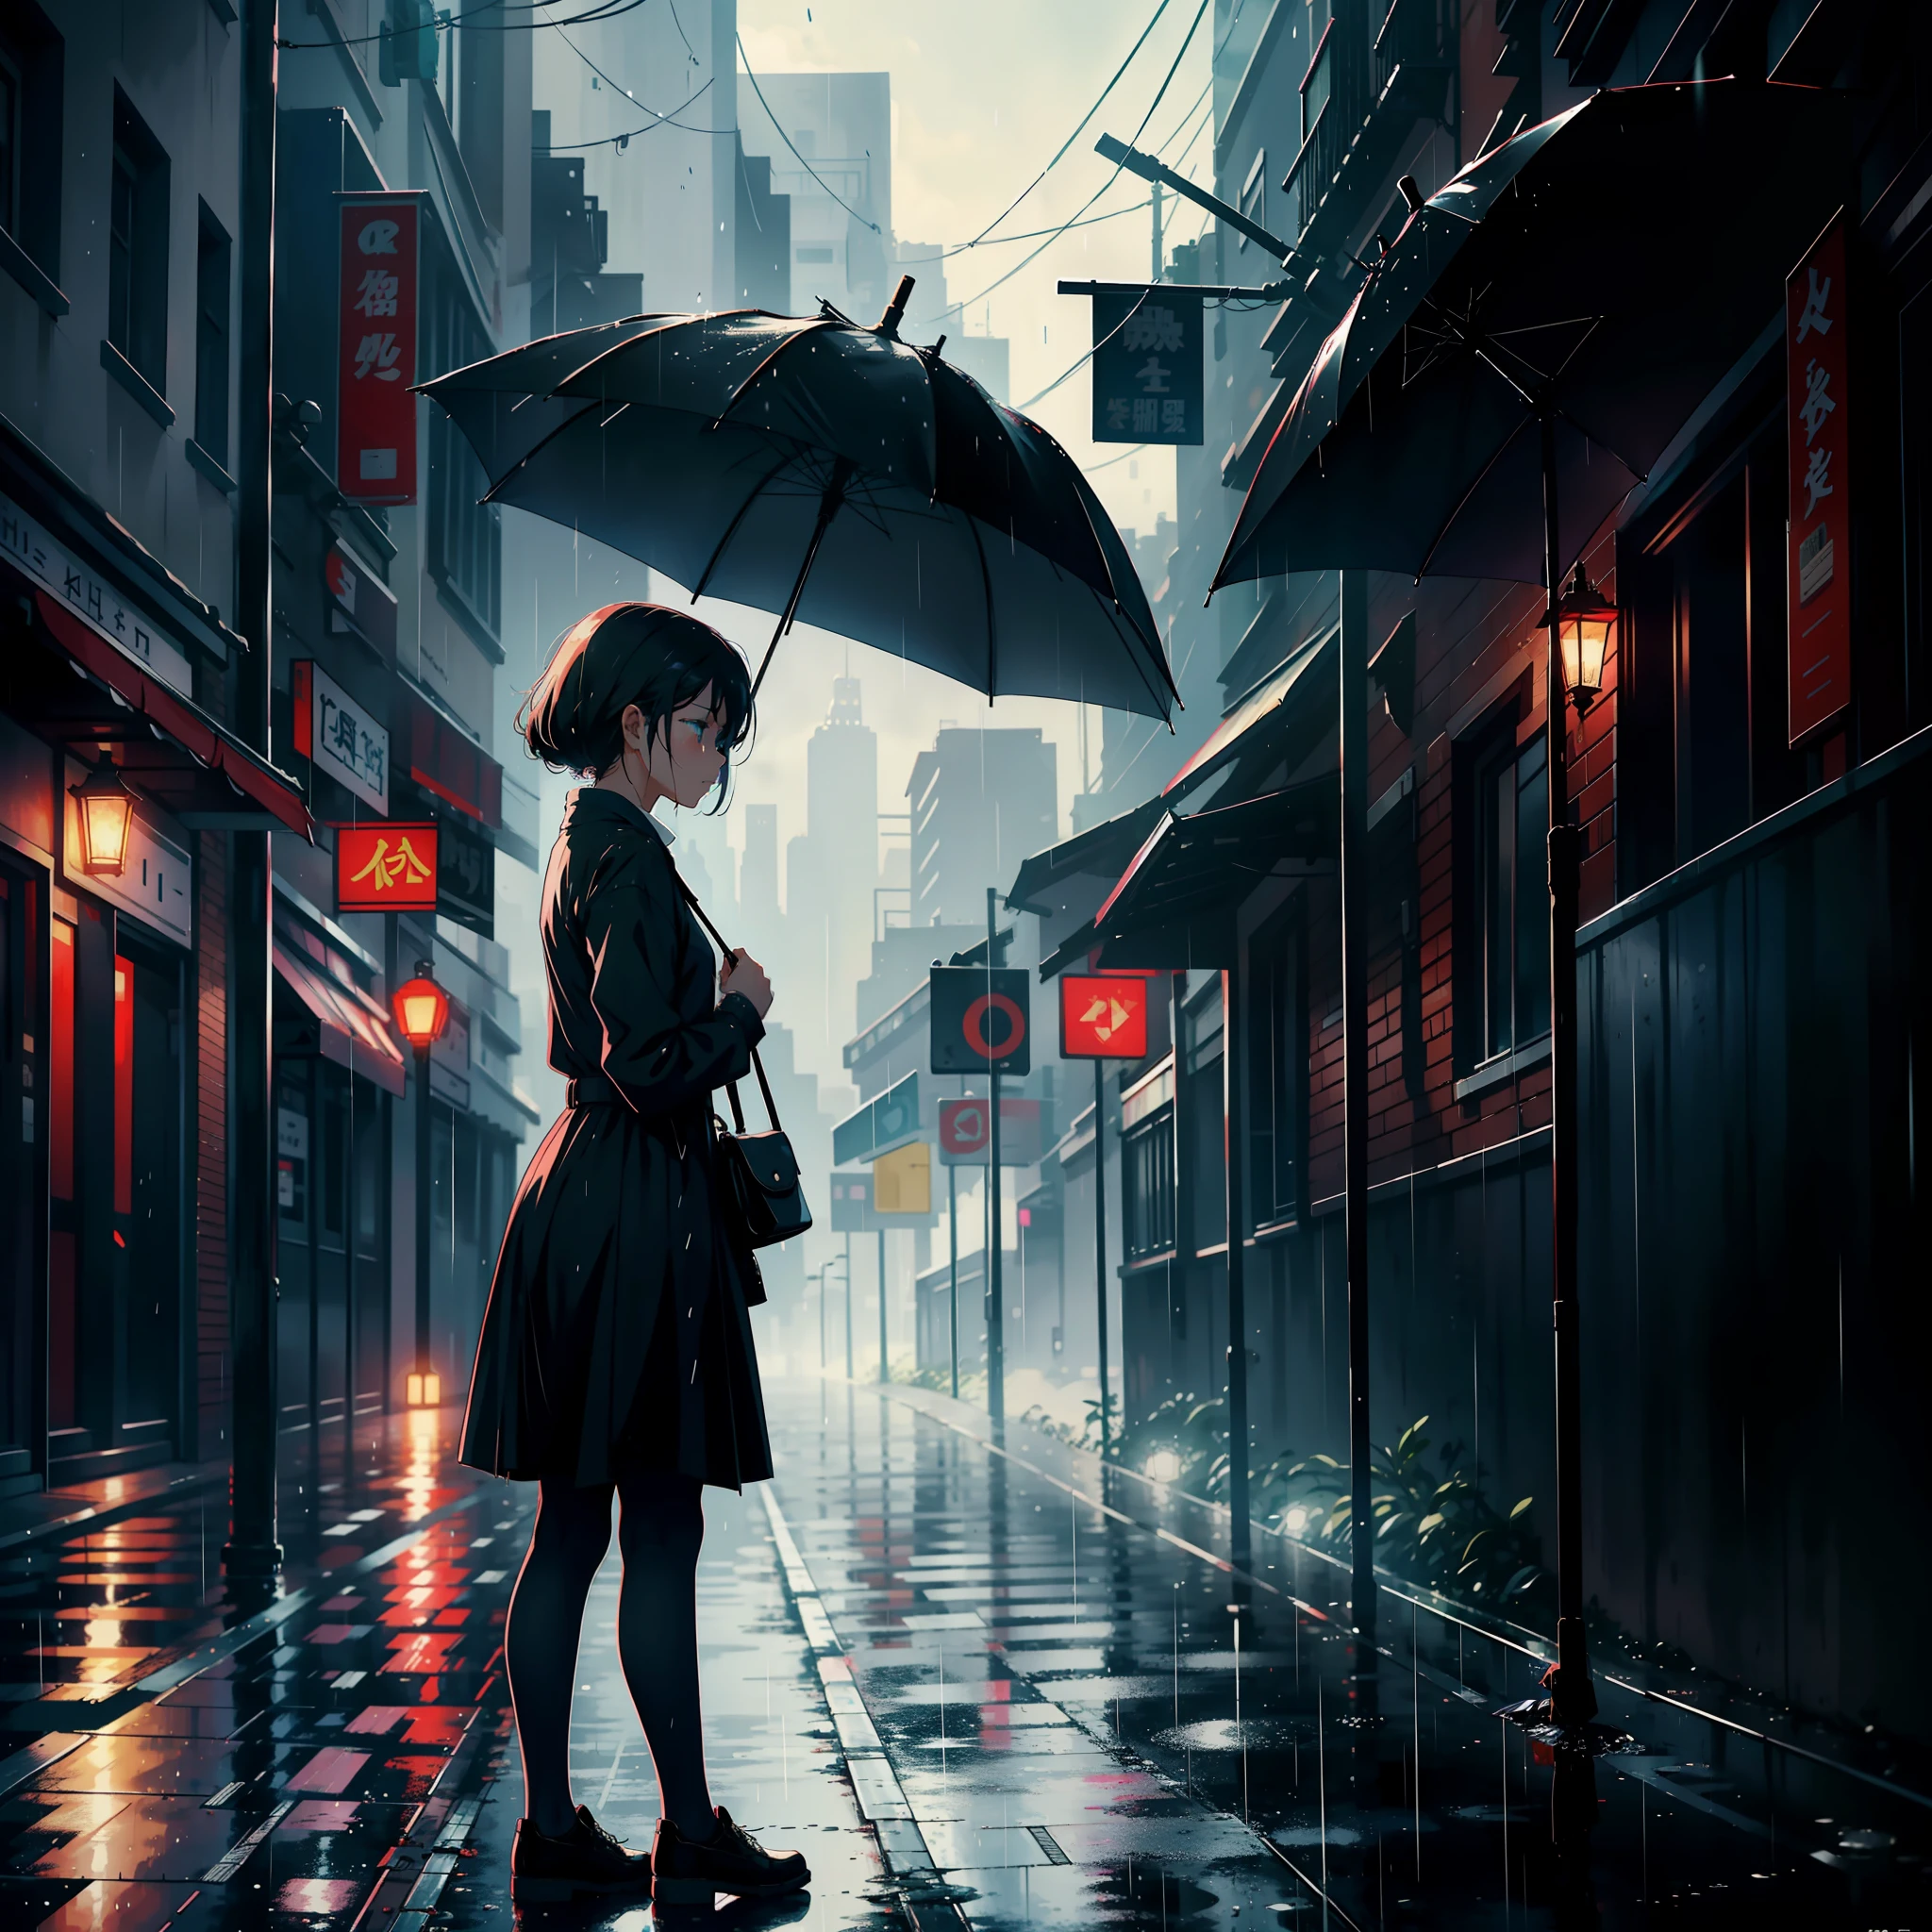 길가에 우산을 쓴 소녀가 서 있었다, 울음소리, 슬프고 비가 내리는 것 같아